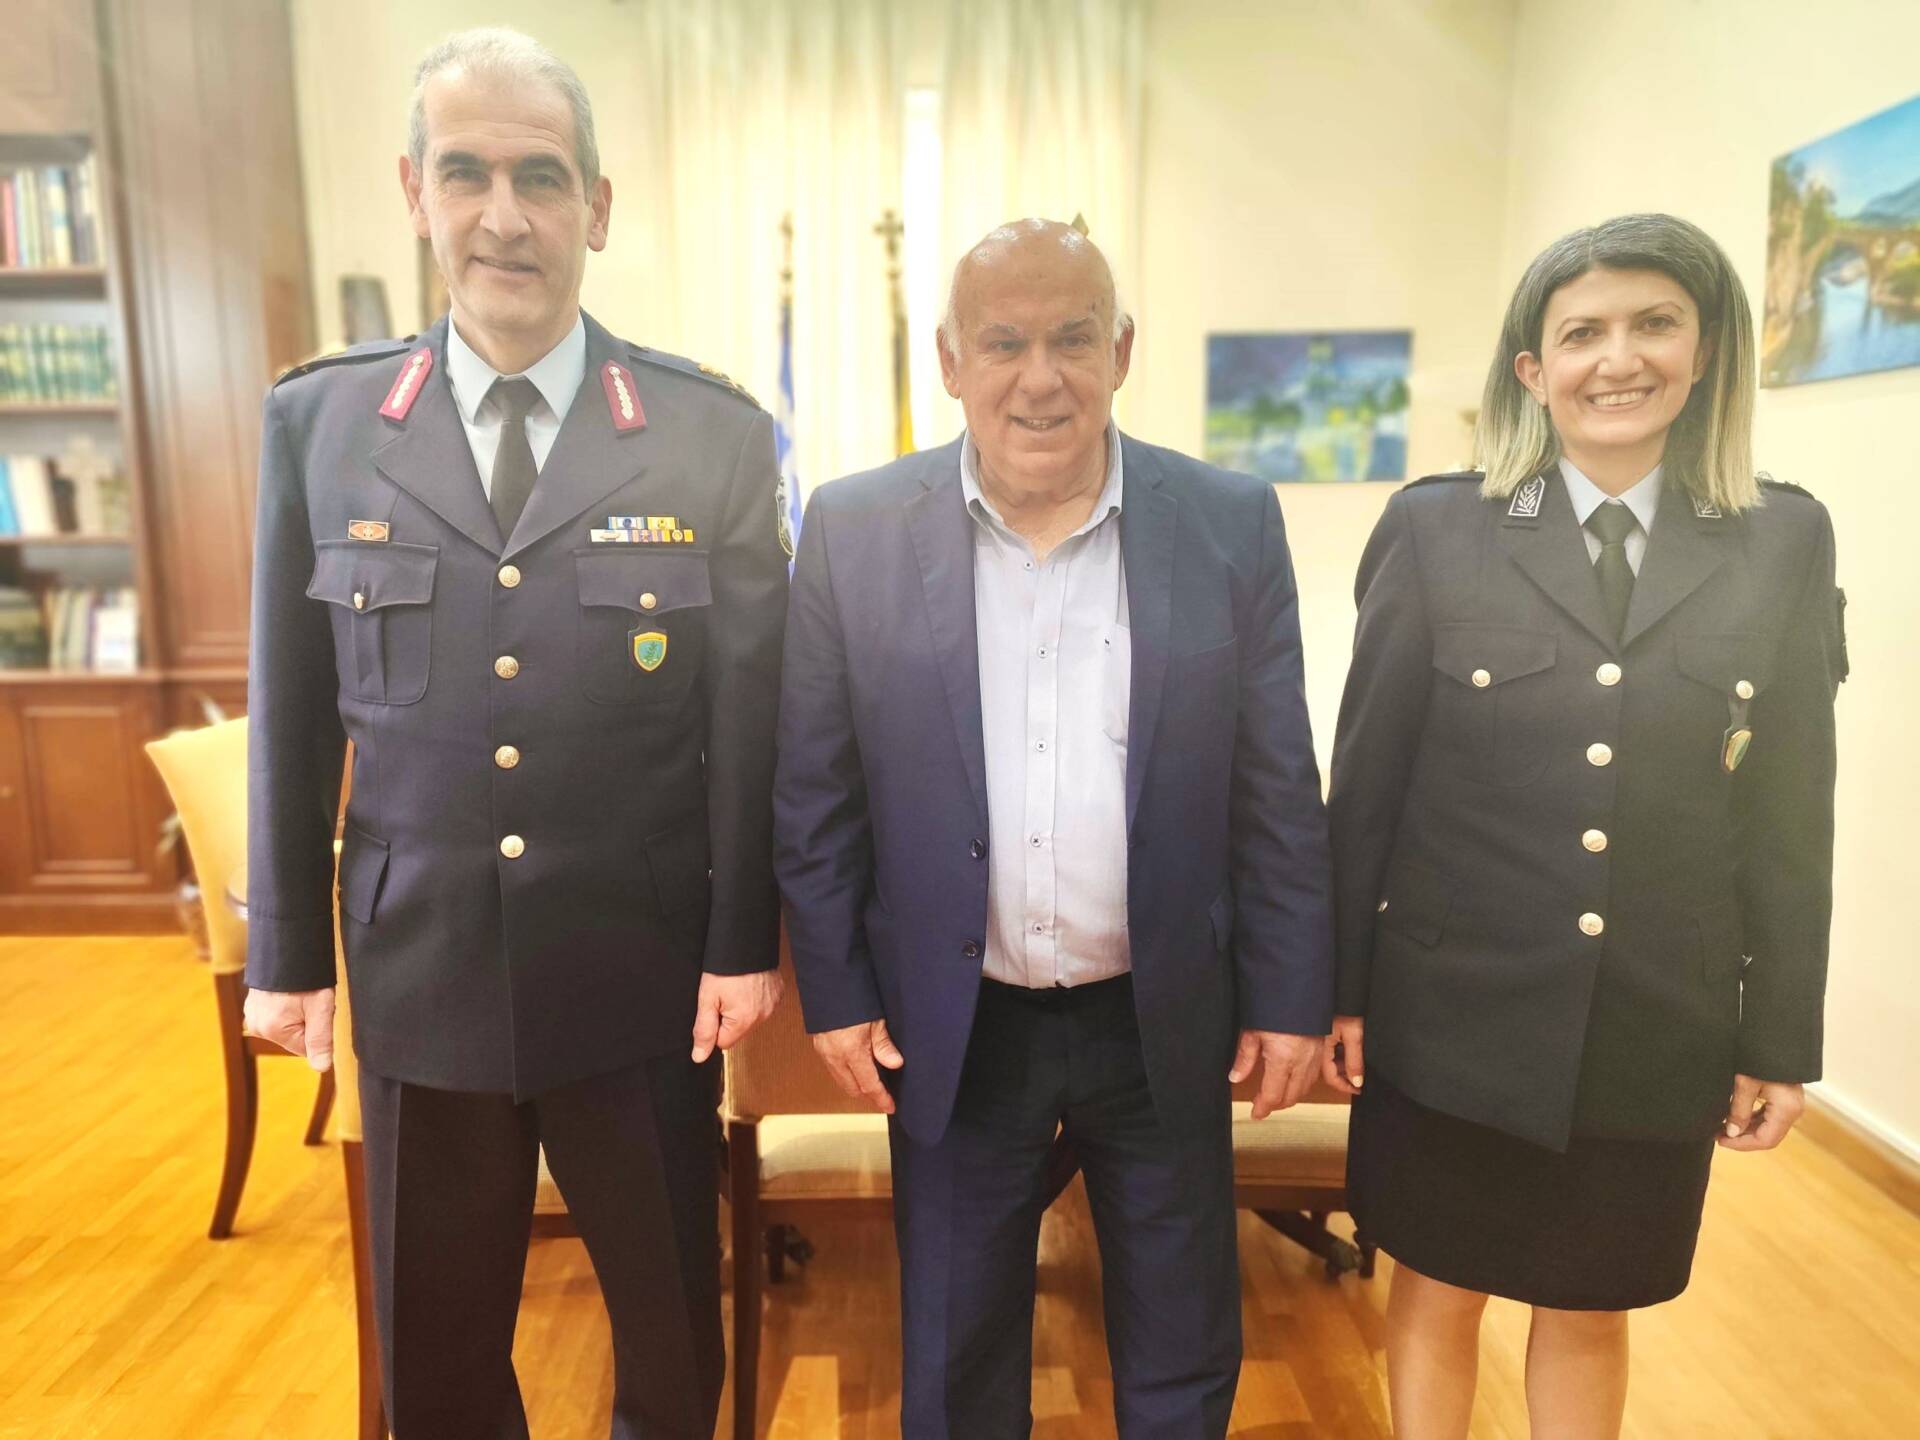 Συνάντηση του Δημάρχου Γρεβενών με τον νέο Γενικό Περιφερειακό Αστυνομικό Διευθυντή Δυτ. Μακεδονίας